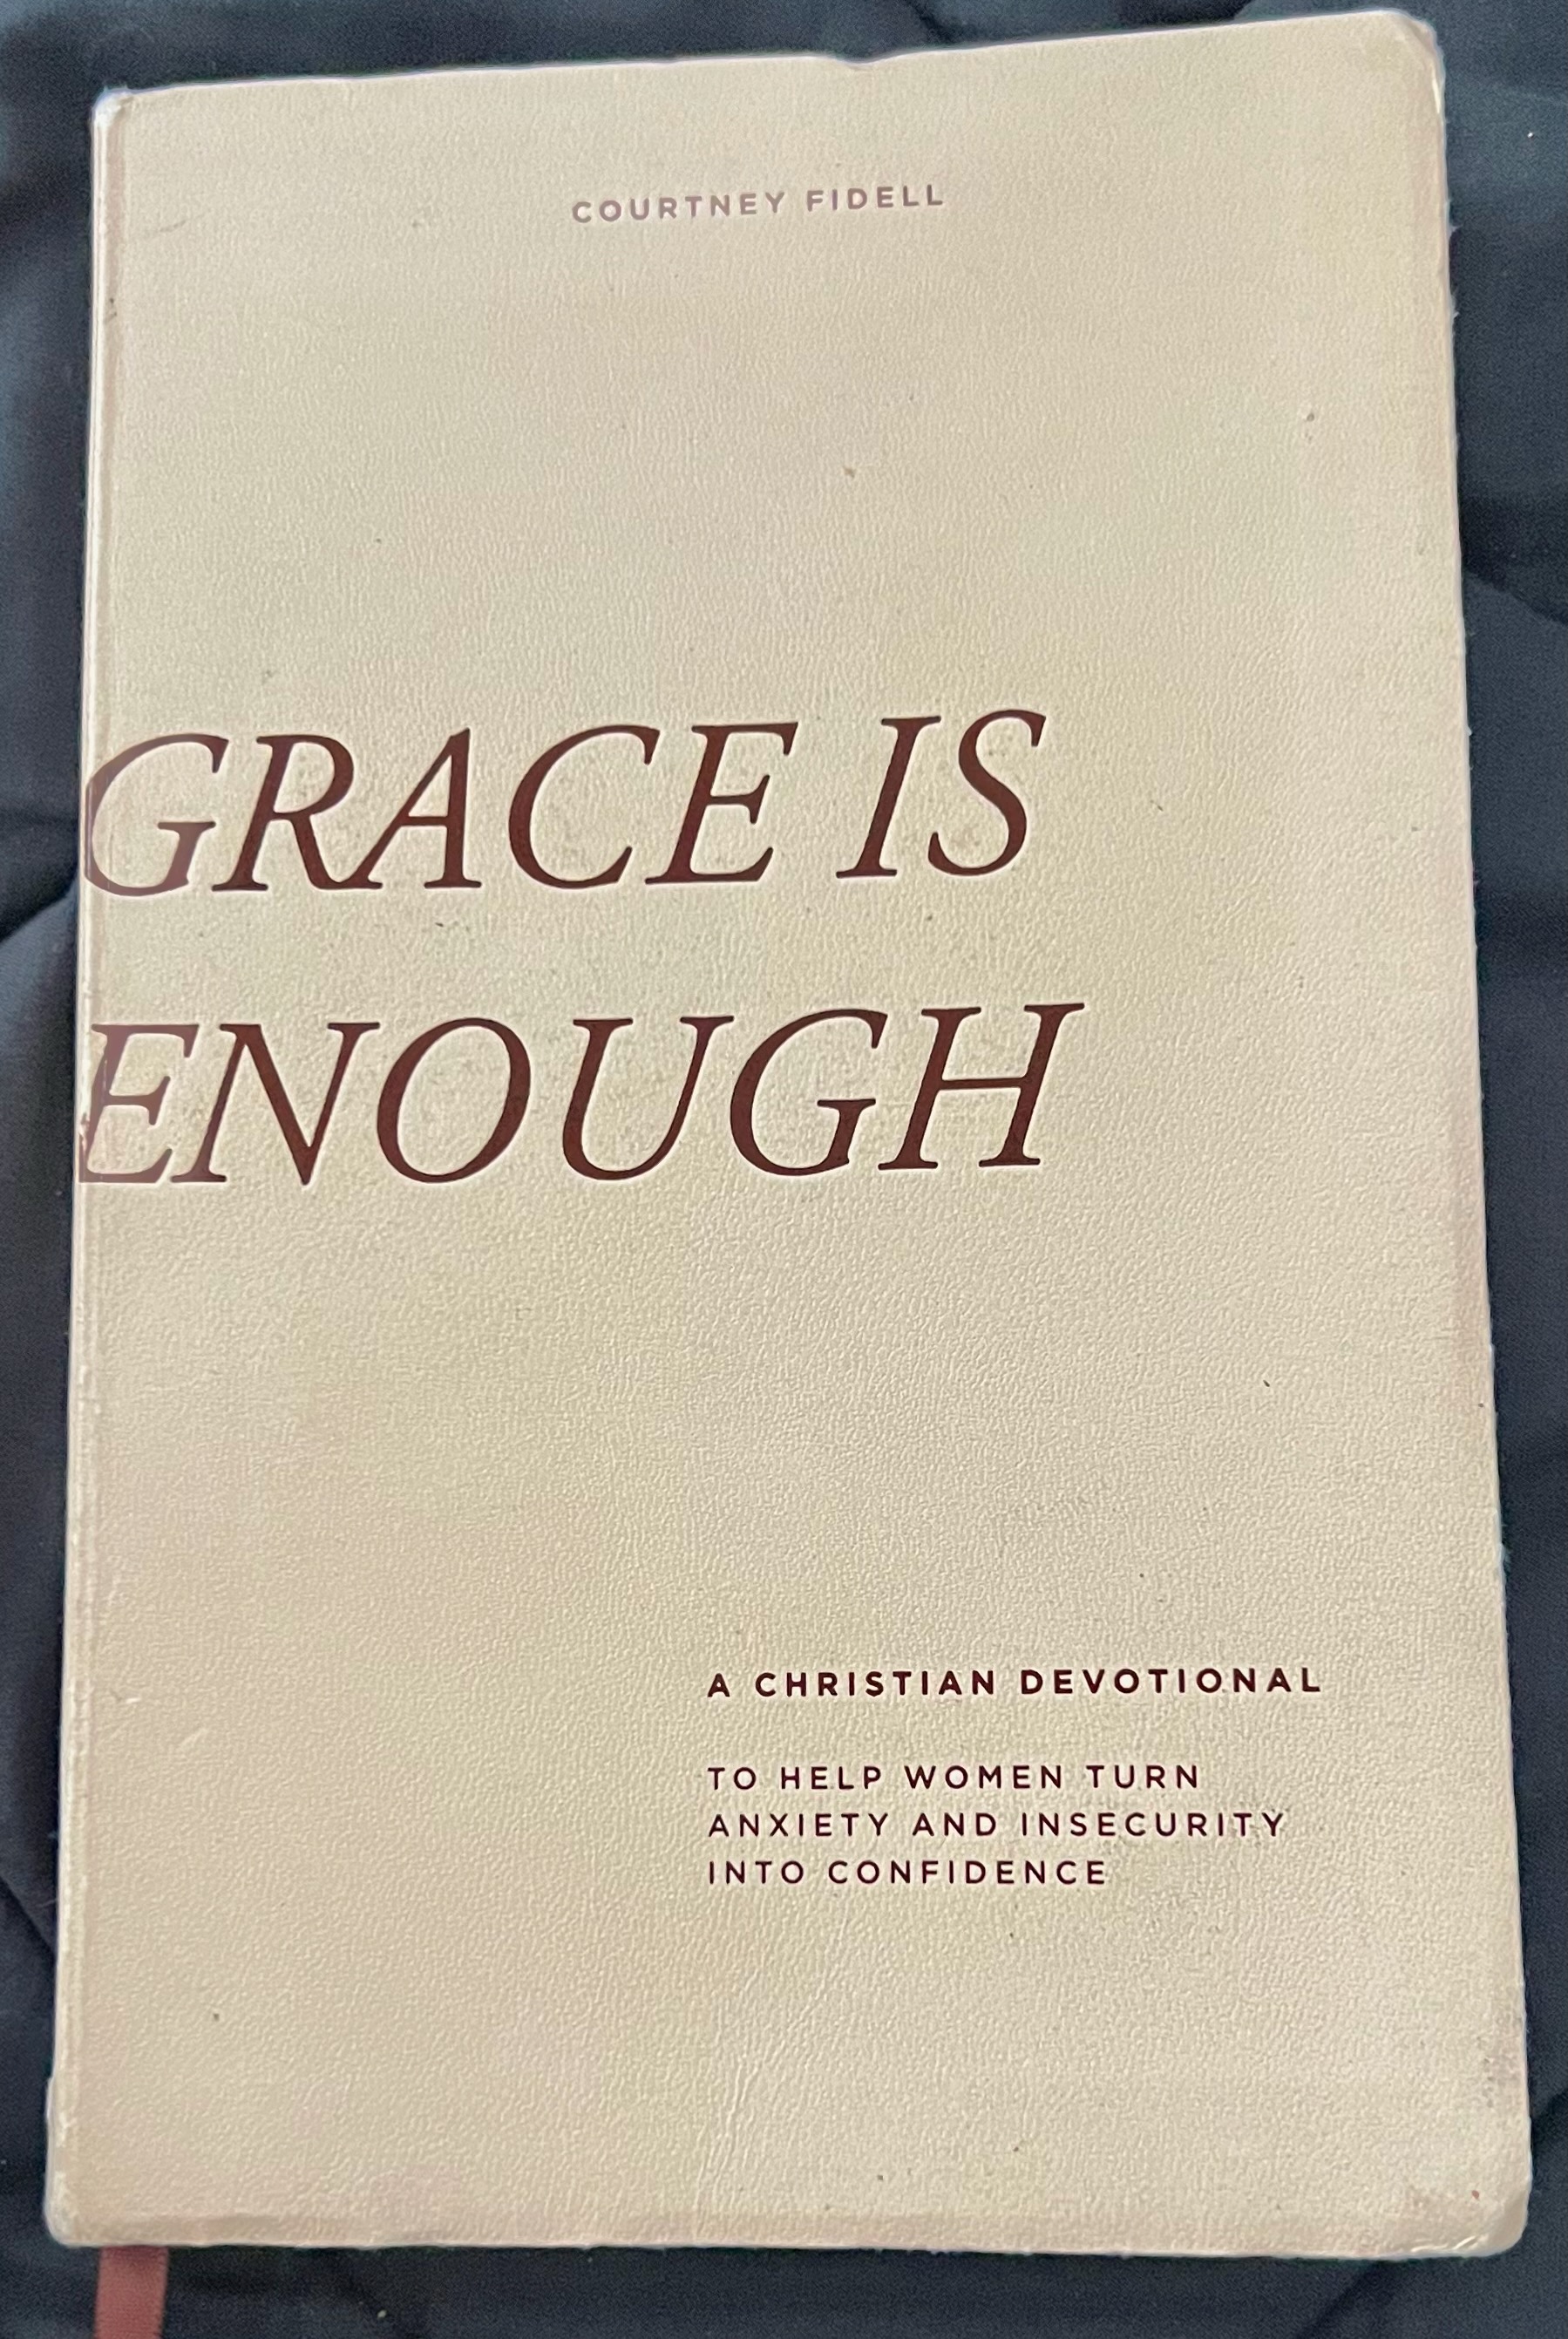 Grace is enough